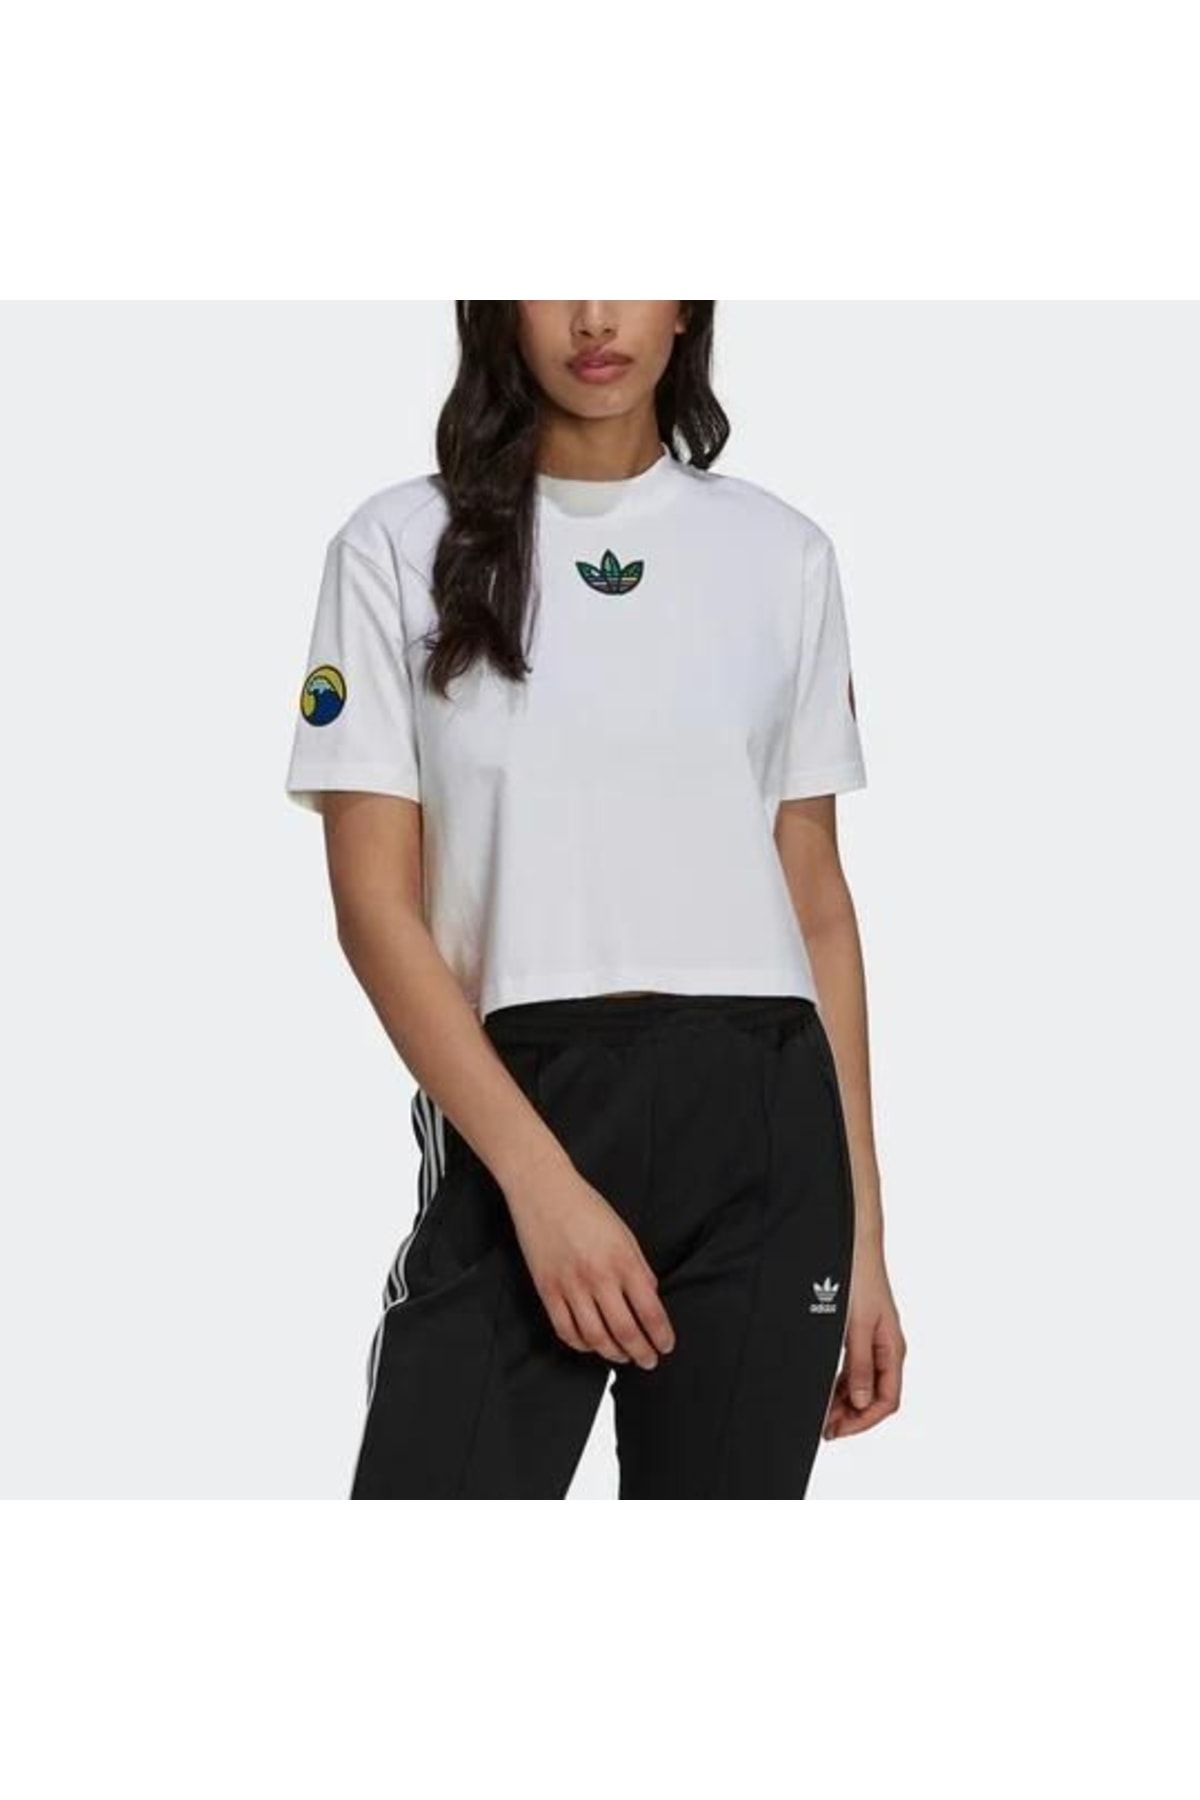 Grænseværdi Anger Skoleuddannelse adidas T-Shirt - White - Regular fit - Trendyol